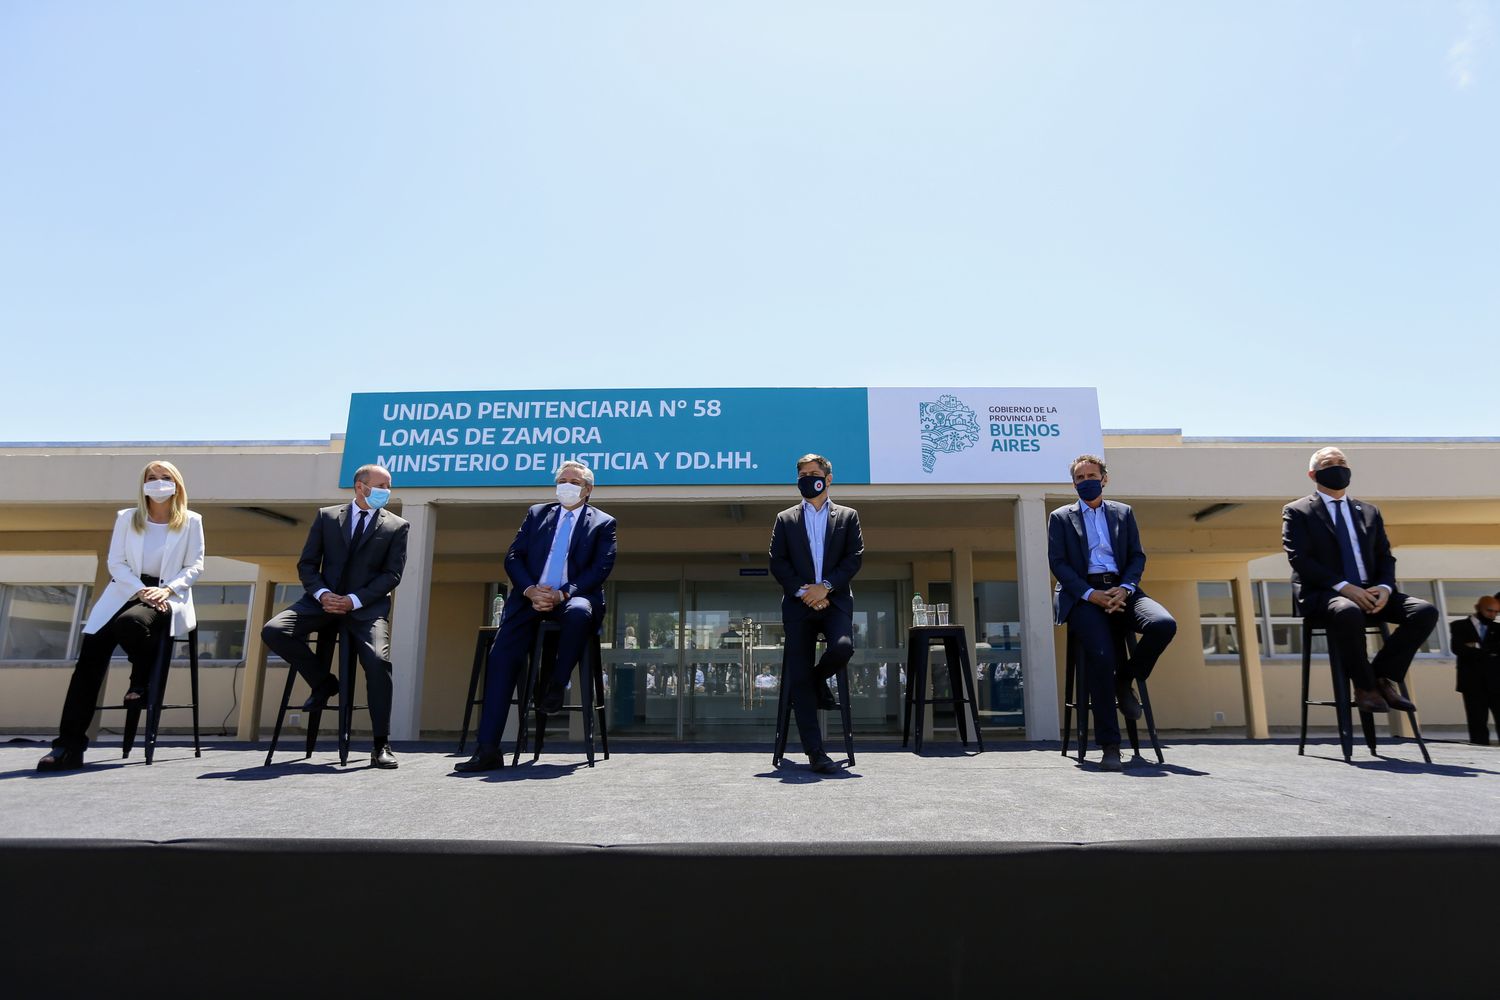 Lomas de Zamora: Inauguraron hospital en la Unidad 58 y anunciaron continuidad de ampliación de plazas en cárceles